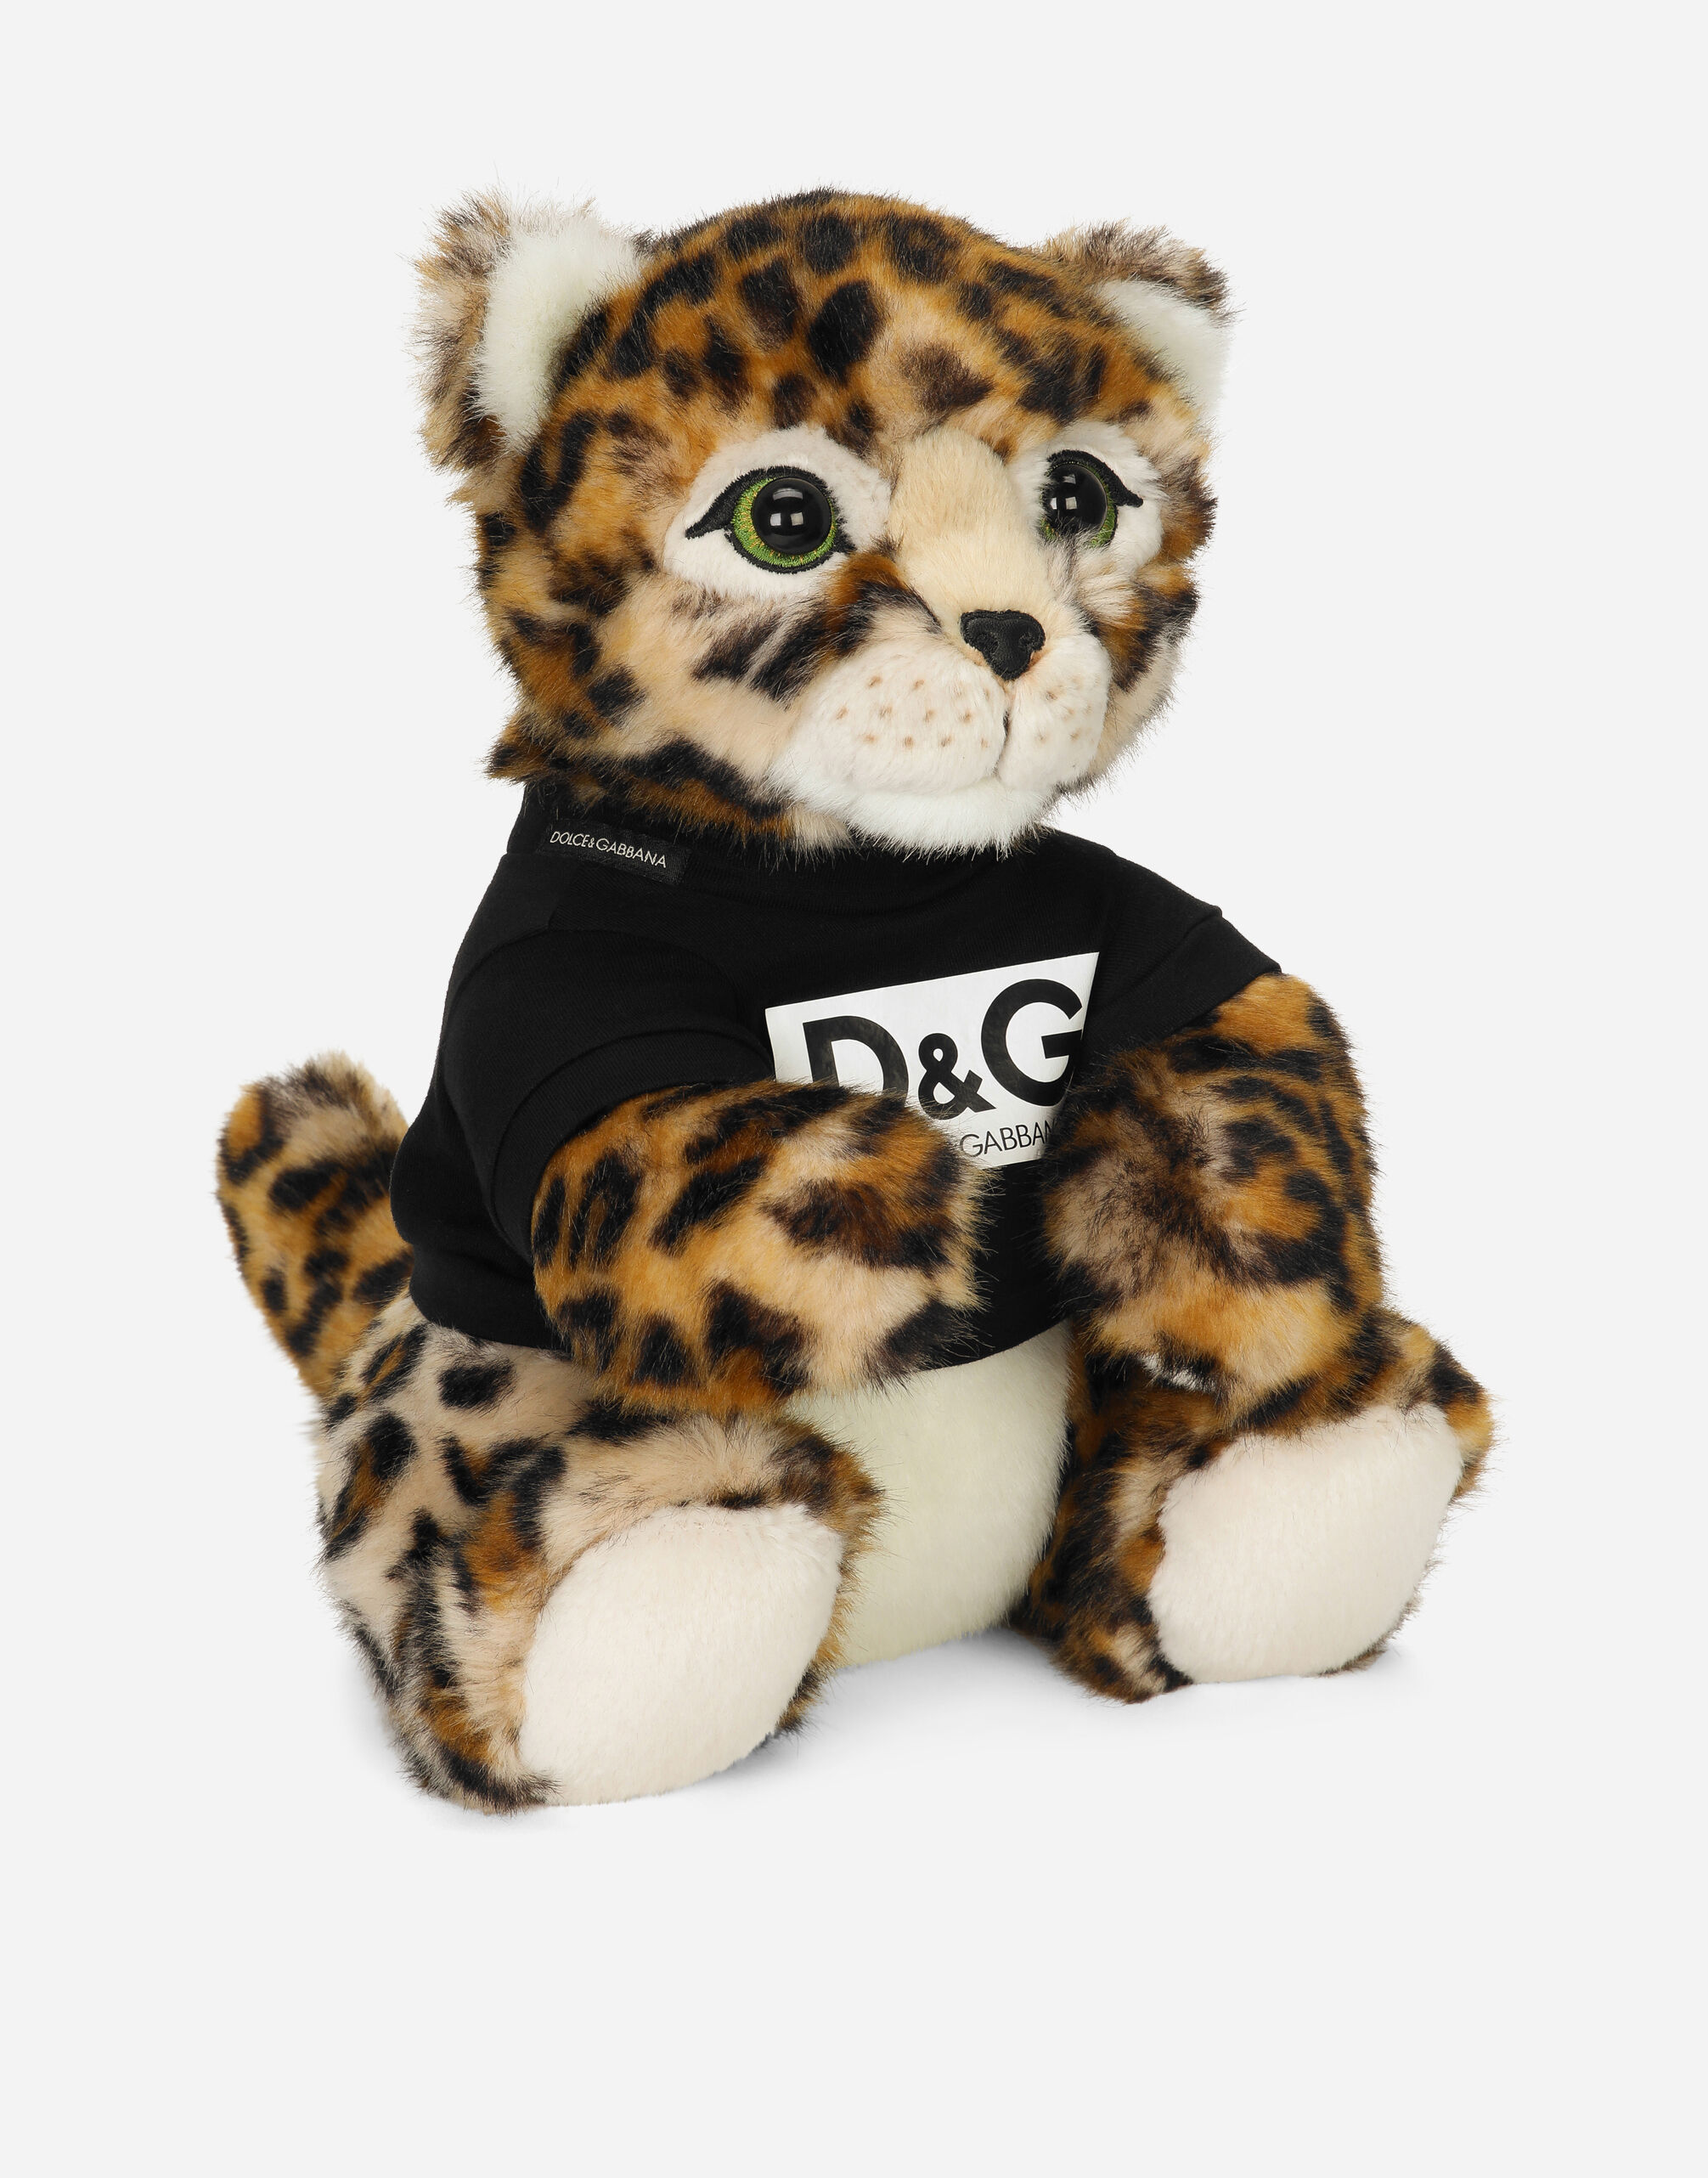 Leopard mascot soft toy